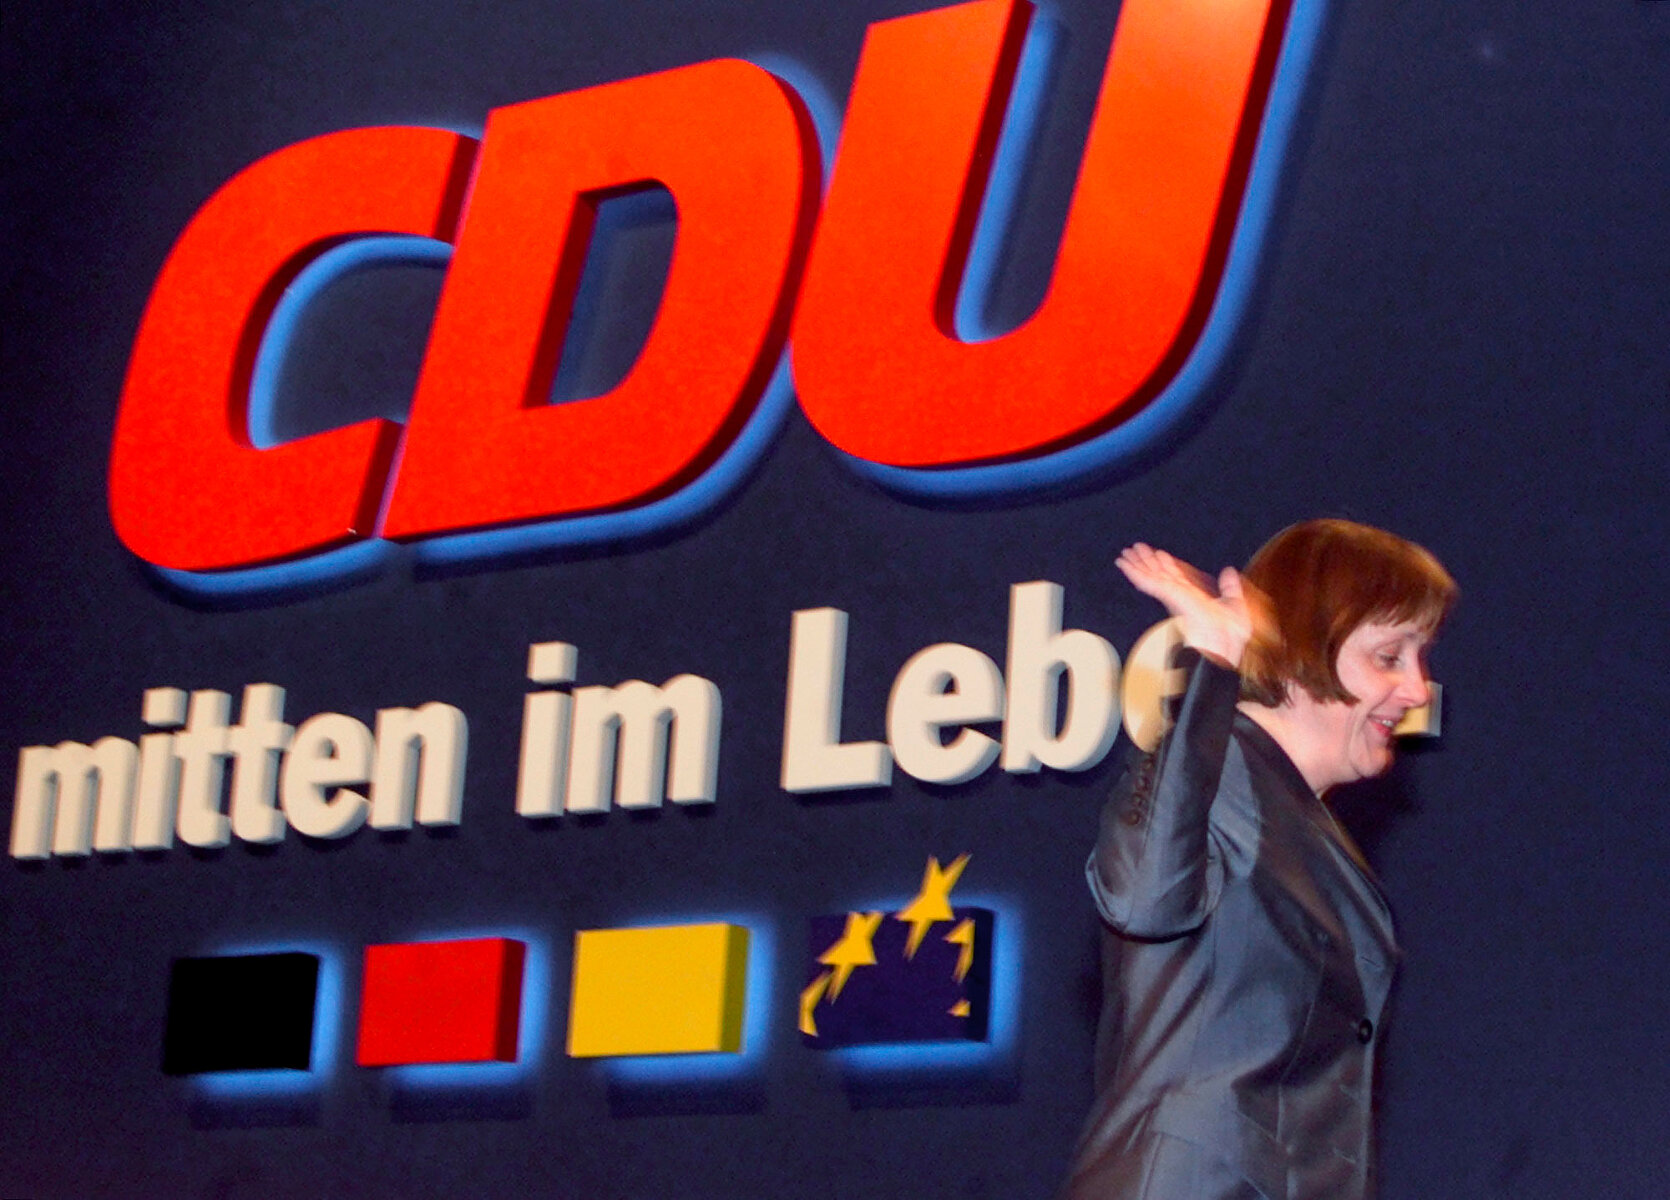 <p>Ангела Меркель уходит с подиума после 13-го федерального съезда ХДС в Эссене, апрель 2000 года</p>

<p>В 2000 году Меркель заняла пост председателя ХДС, на котором оставалась в течение&nbsp;18 лет.</p>